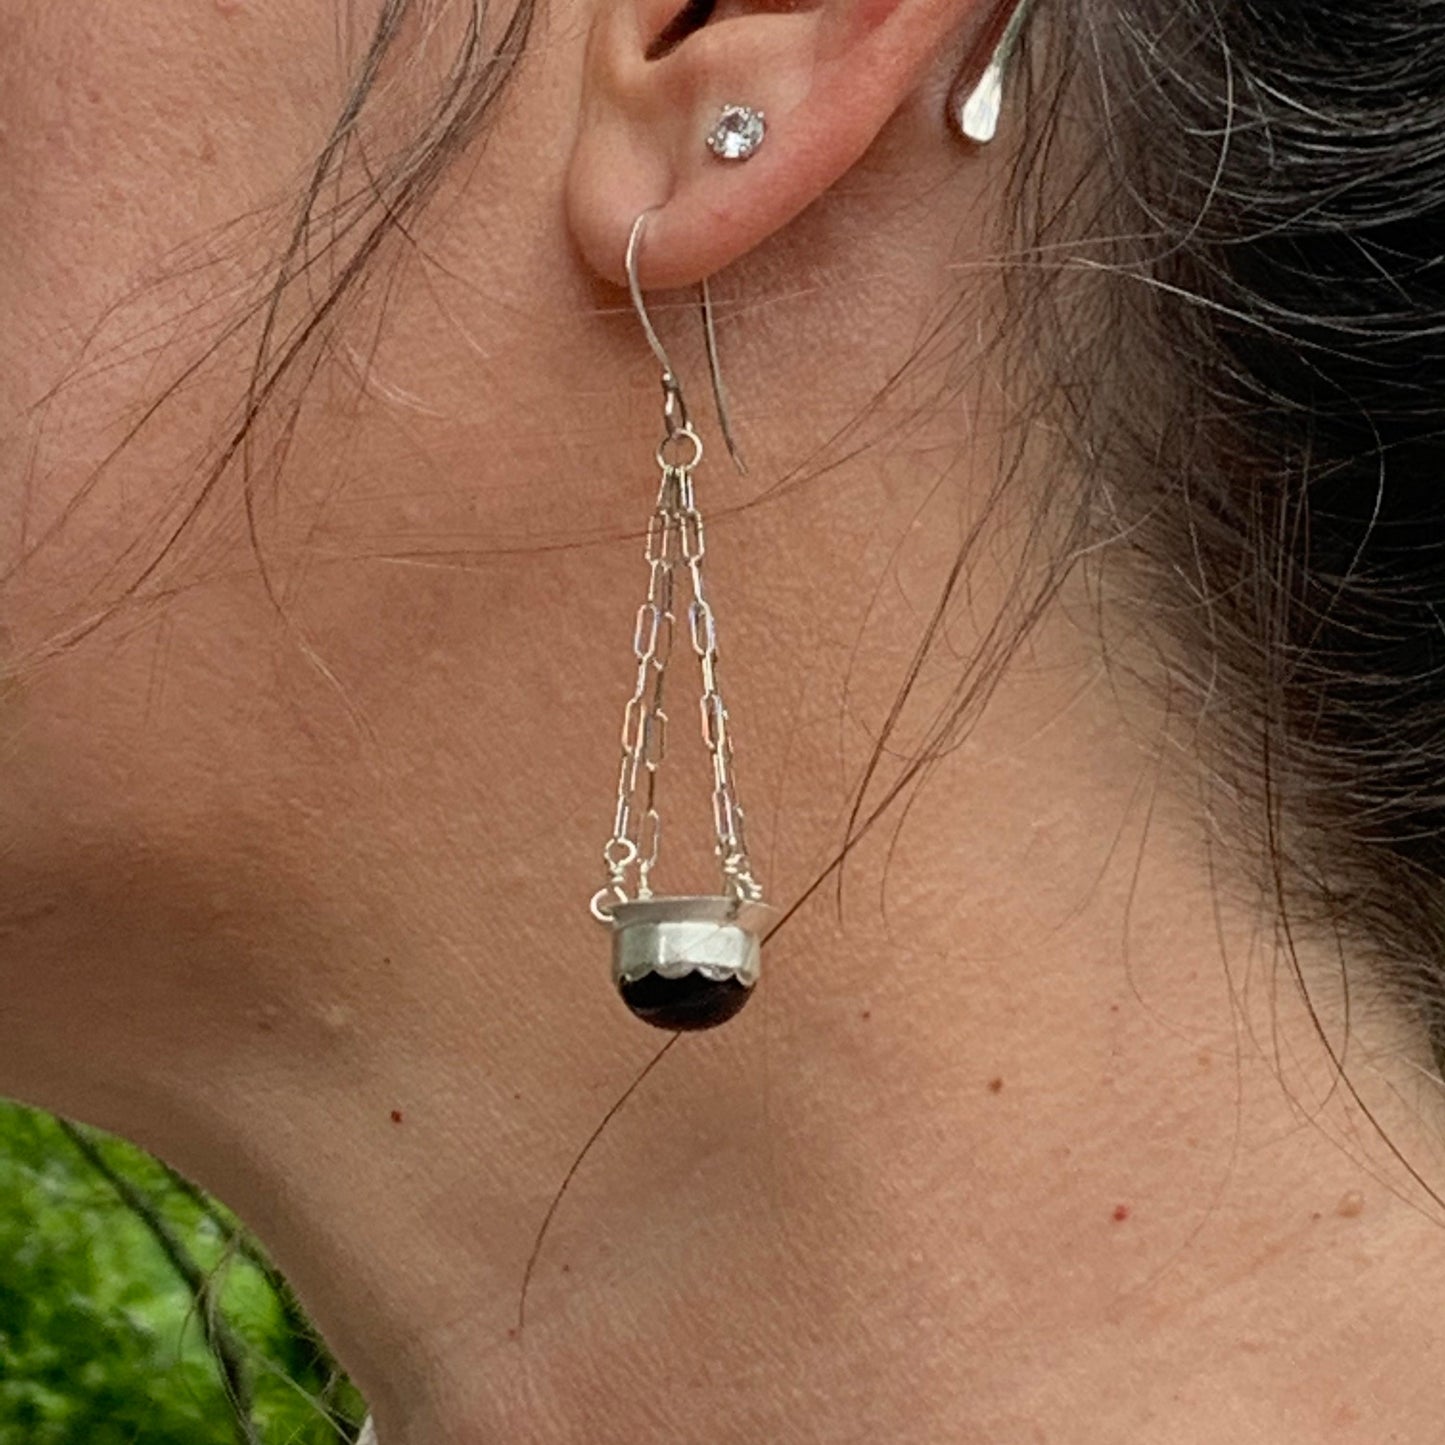 Black onyx and sterling chandelier earrings - unique boho design- heirloom jewelry - handmade gemstone earrings for women - fun earrings